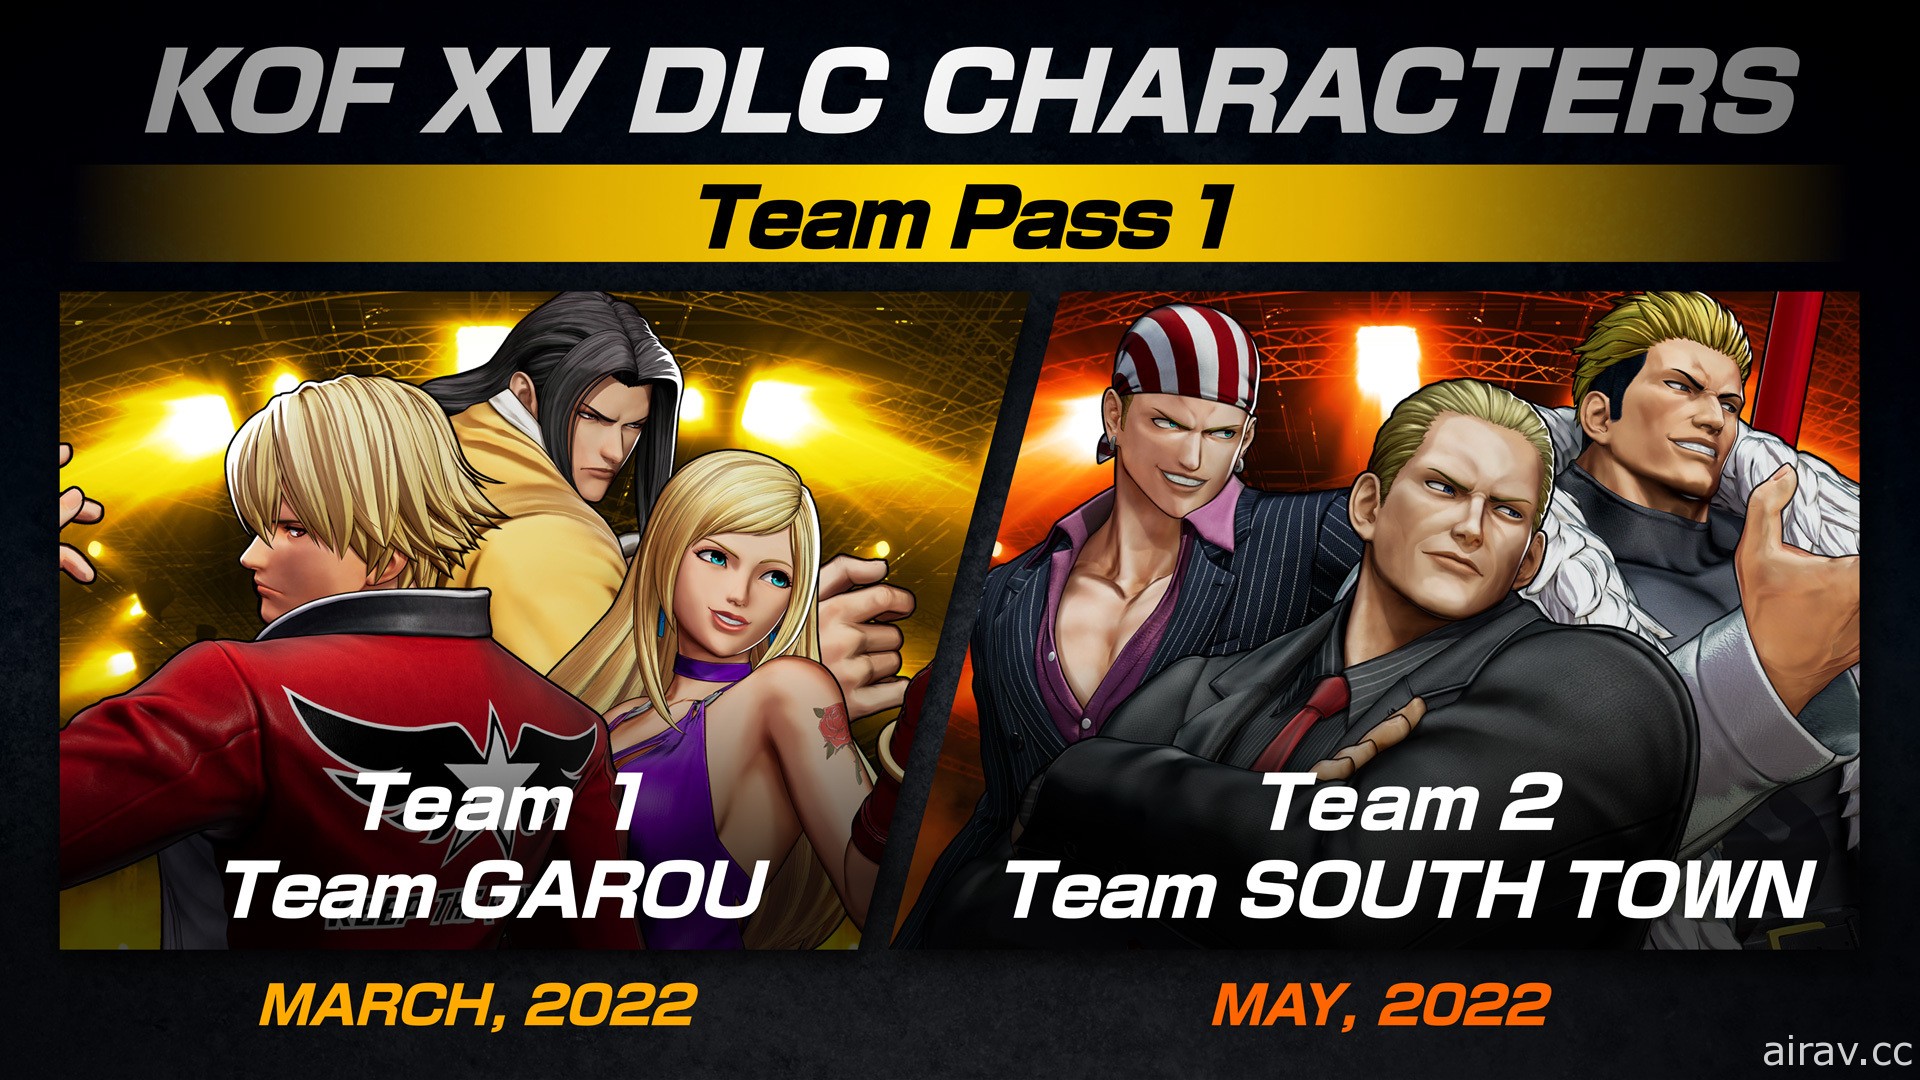 《拳皇 XV》DLC 参战阵容将由“饿狼狼之印记队”及“南镇队”打头阵